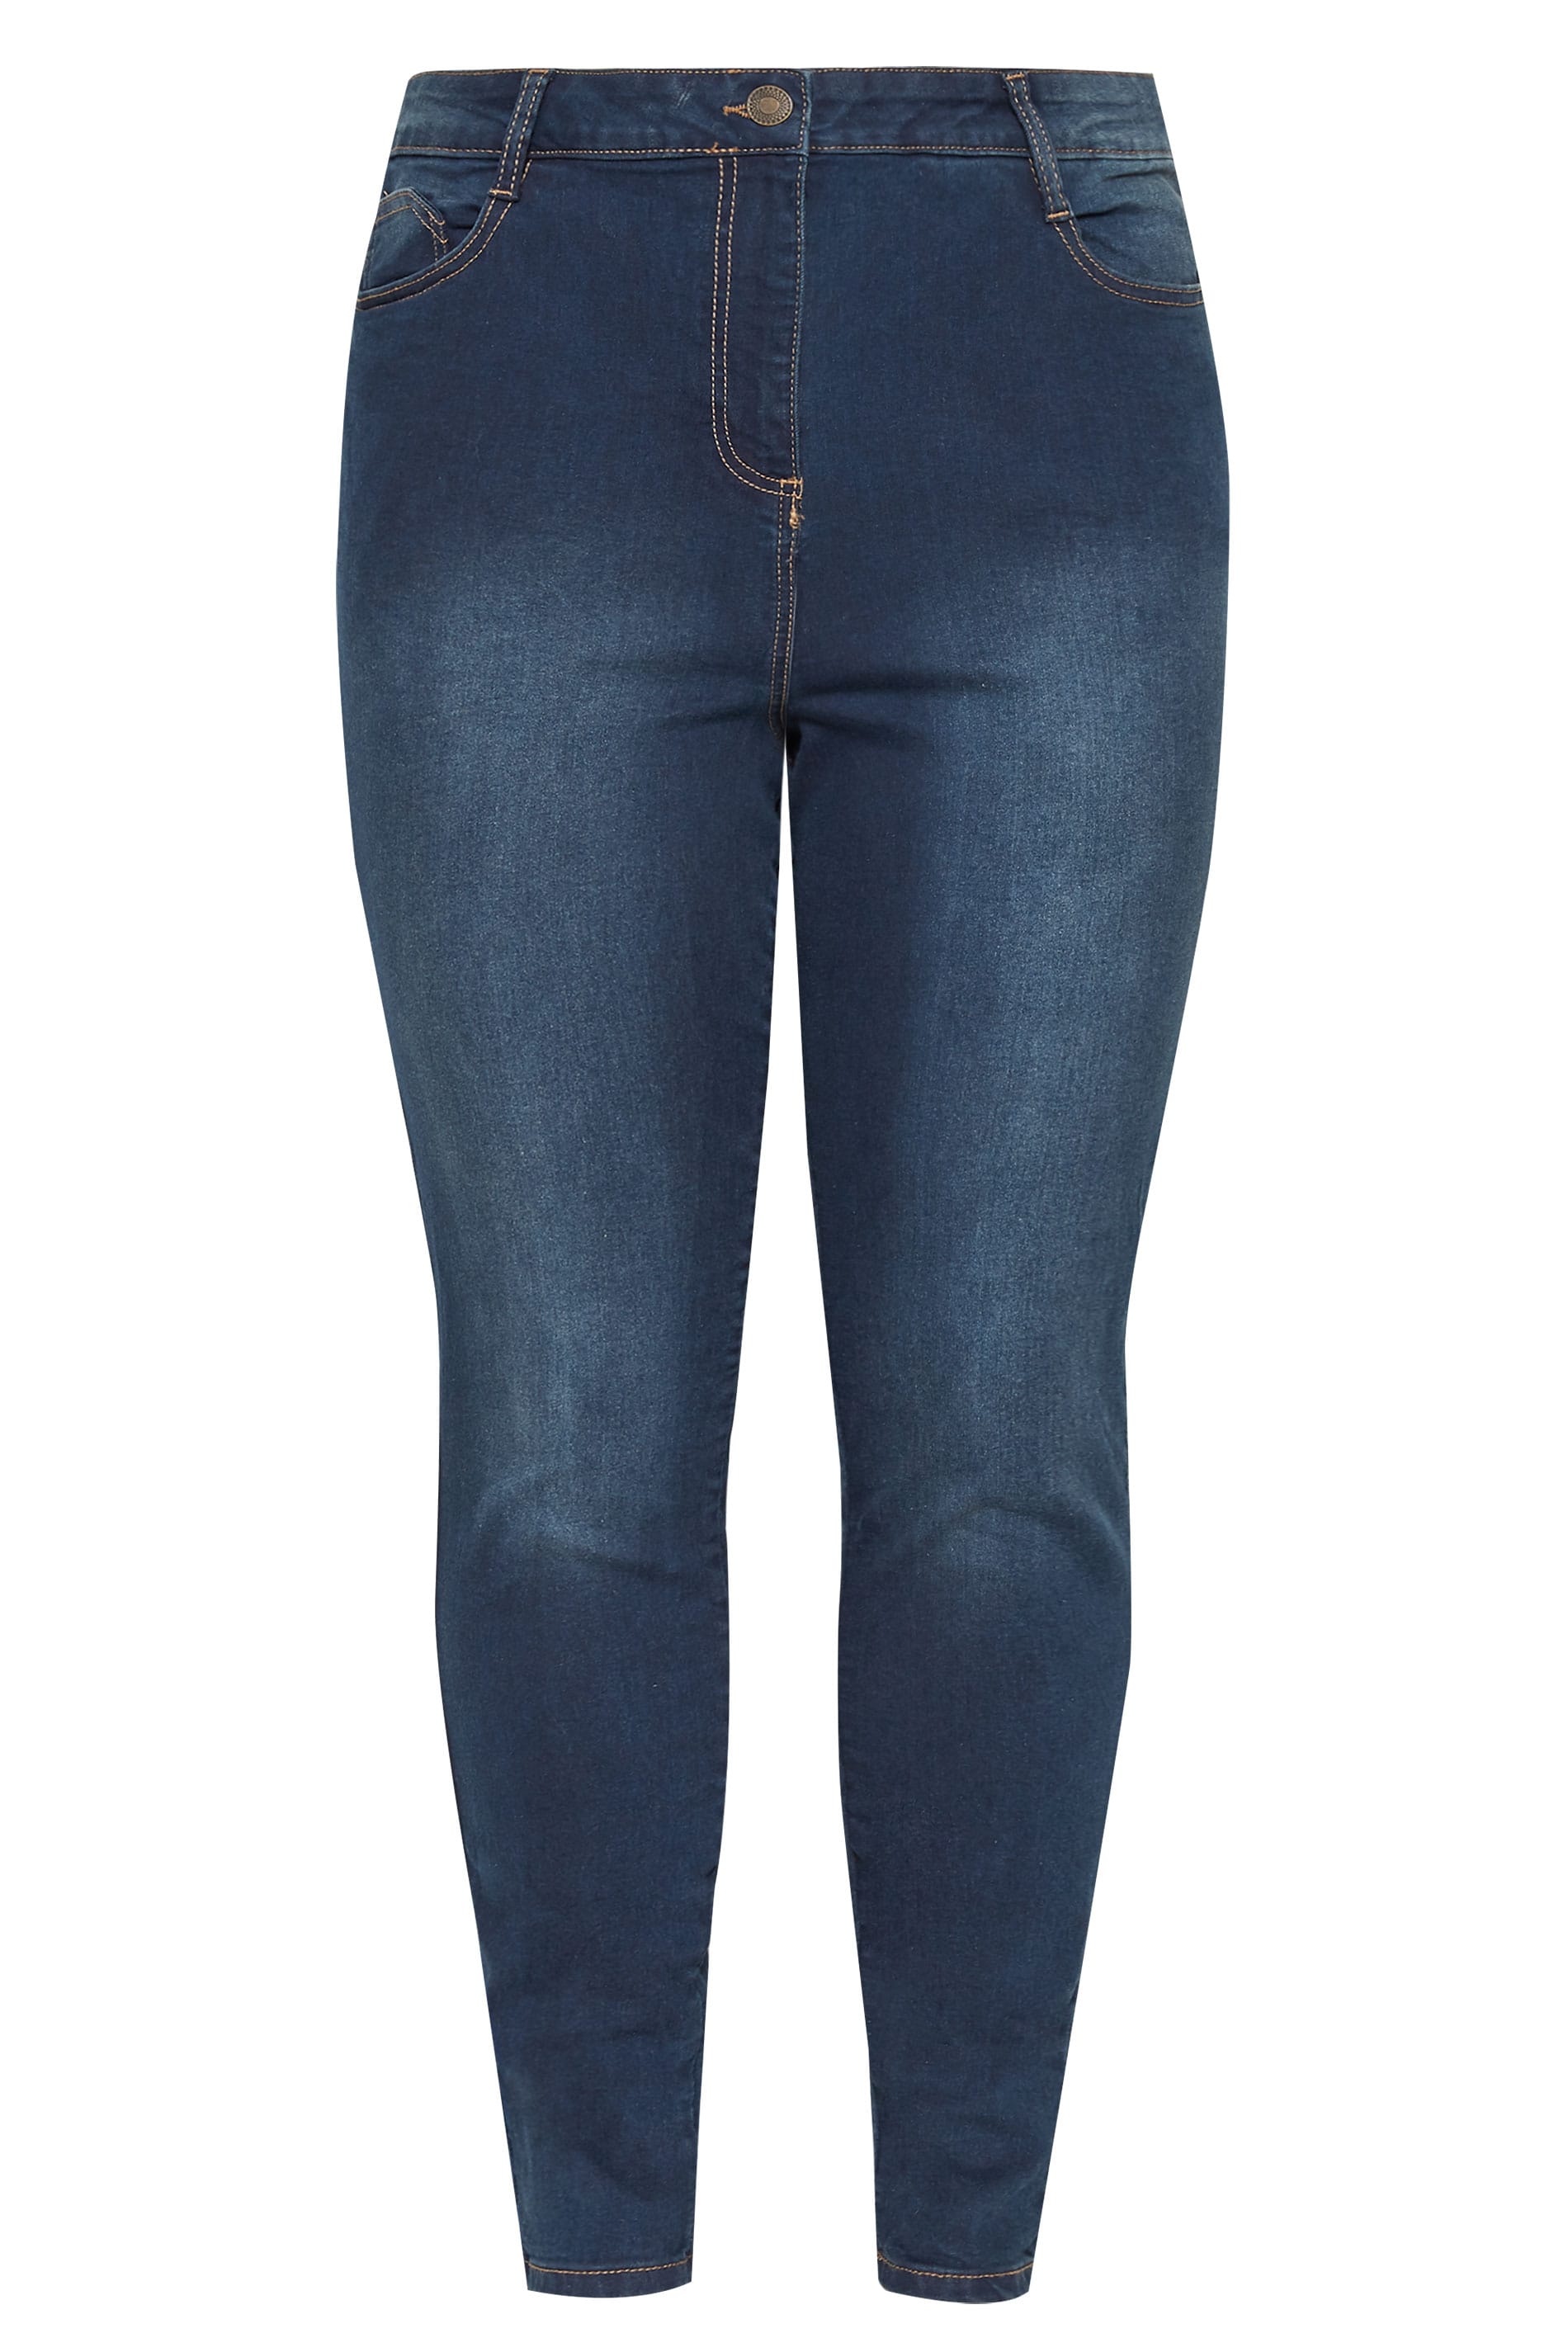 New Contrast Color Denim Jeans Women  Curvy women jeans, Casual denim pants,  Curvy jeans